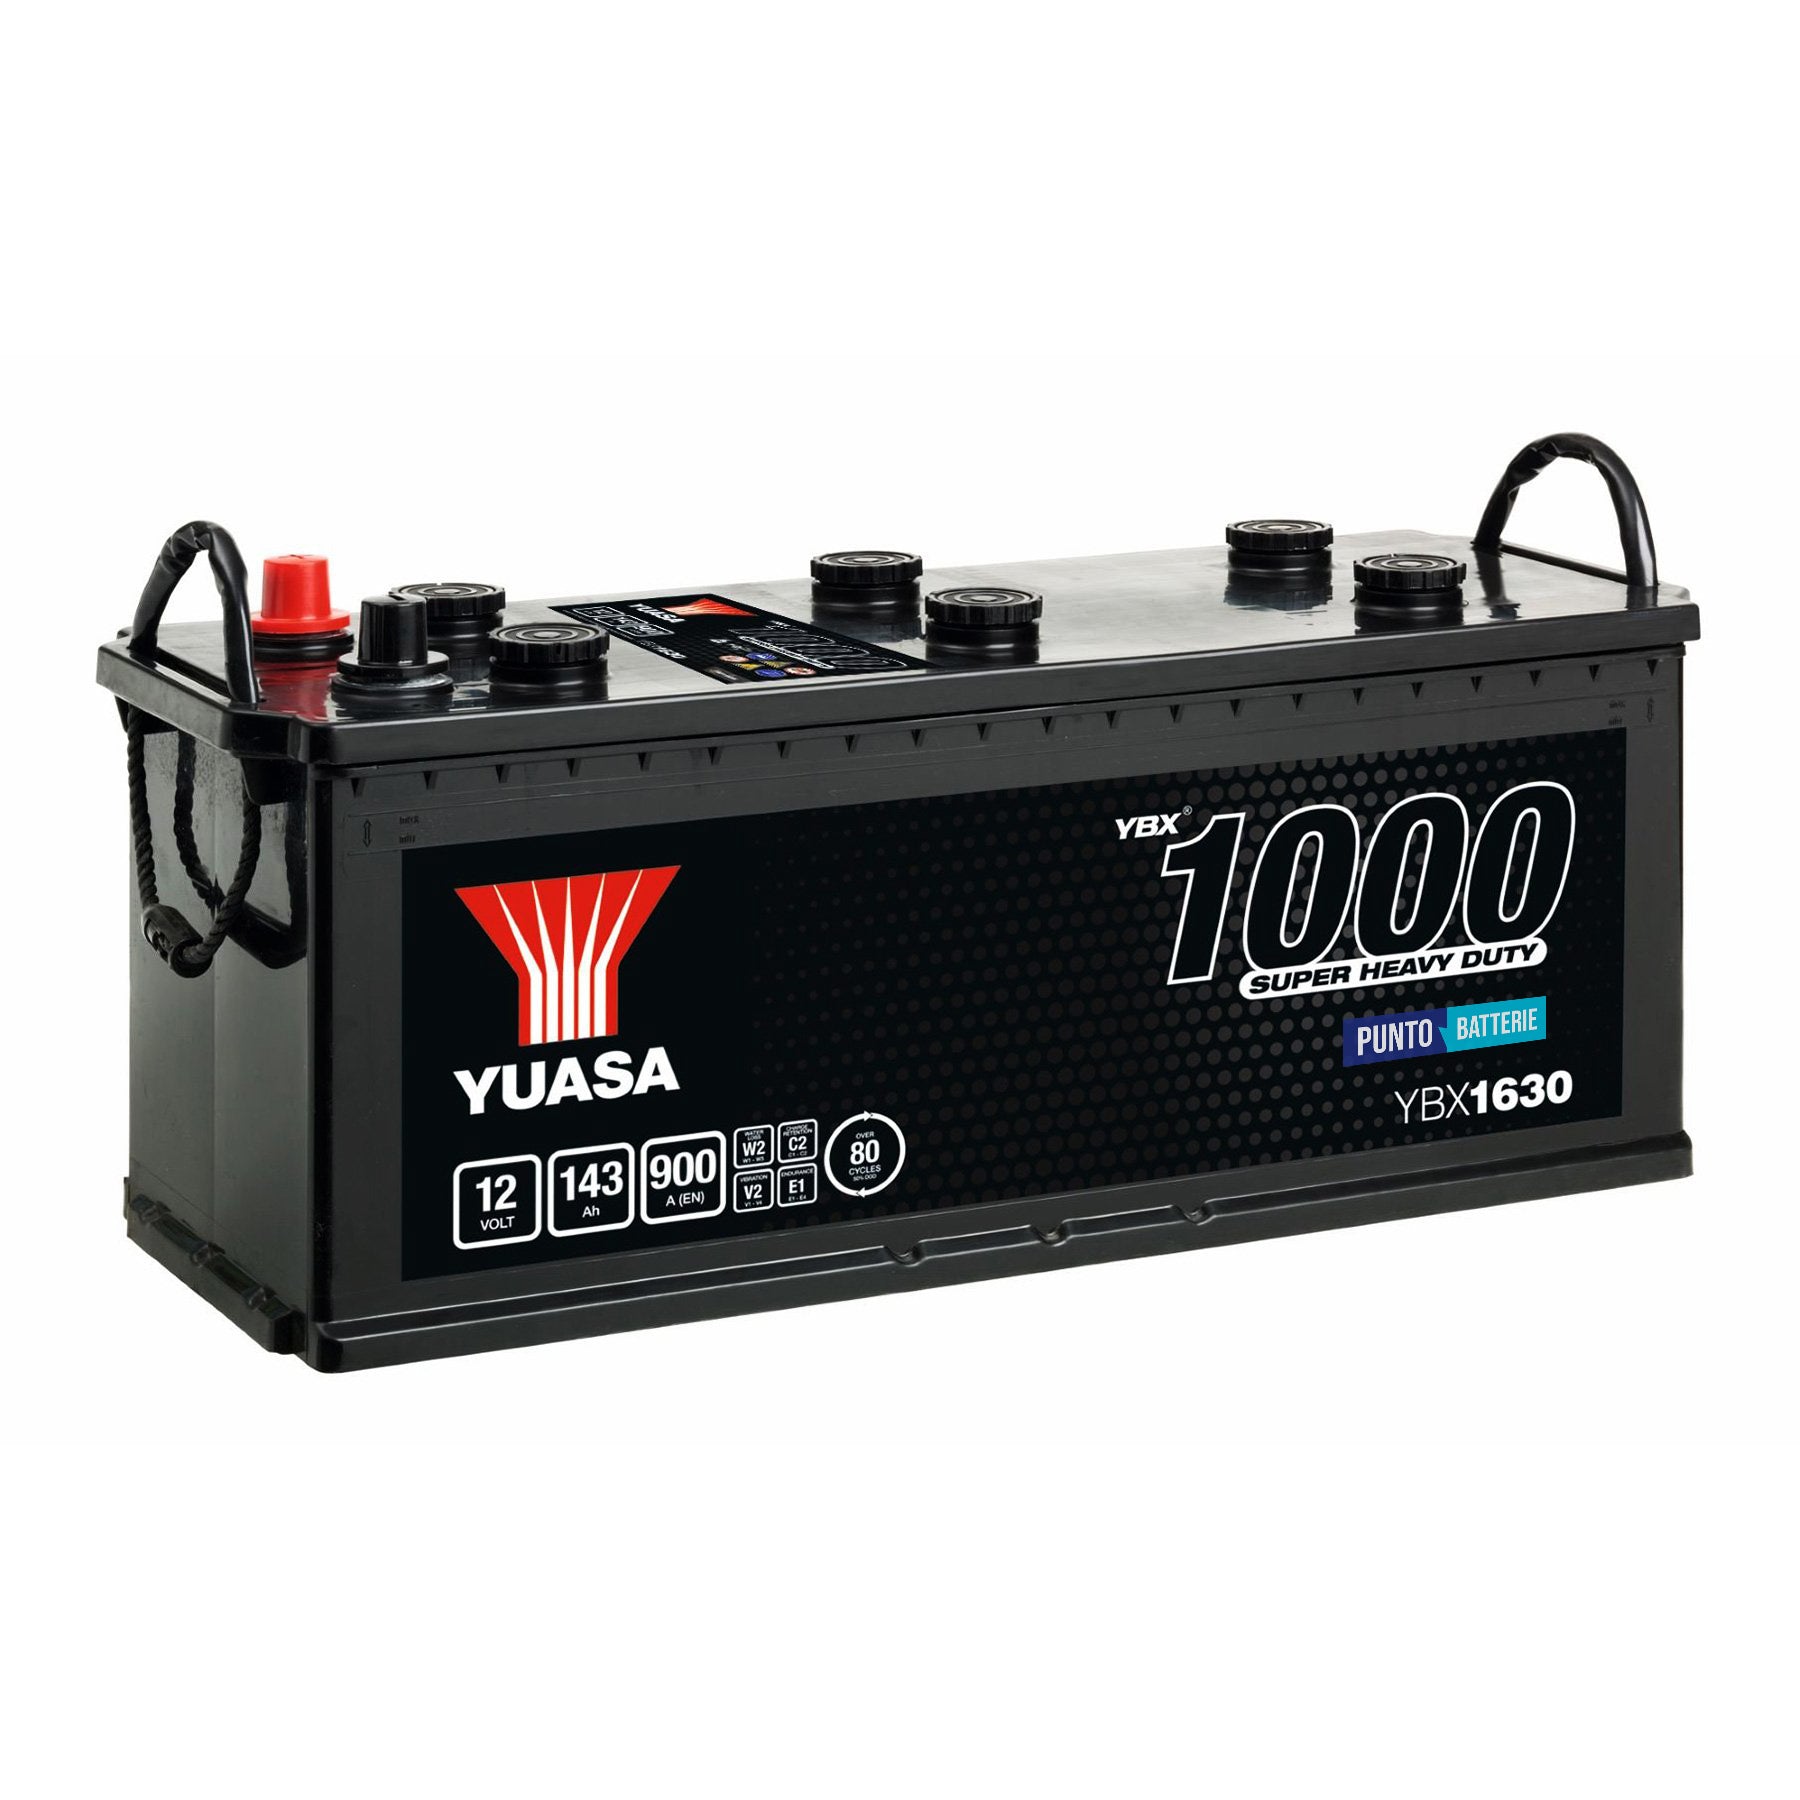 Batteria originale Yuasa YBX1000 YBX1630, dimensioni 513 x 189 x 223, polo positivo a sinistra, 12 volt, 143 amperora, 900 ampere. Batteria per camion e veicoli pesanti.